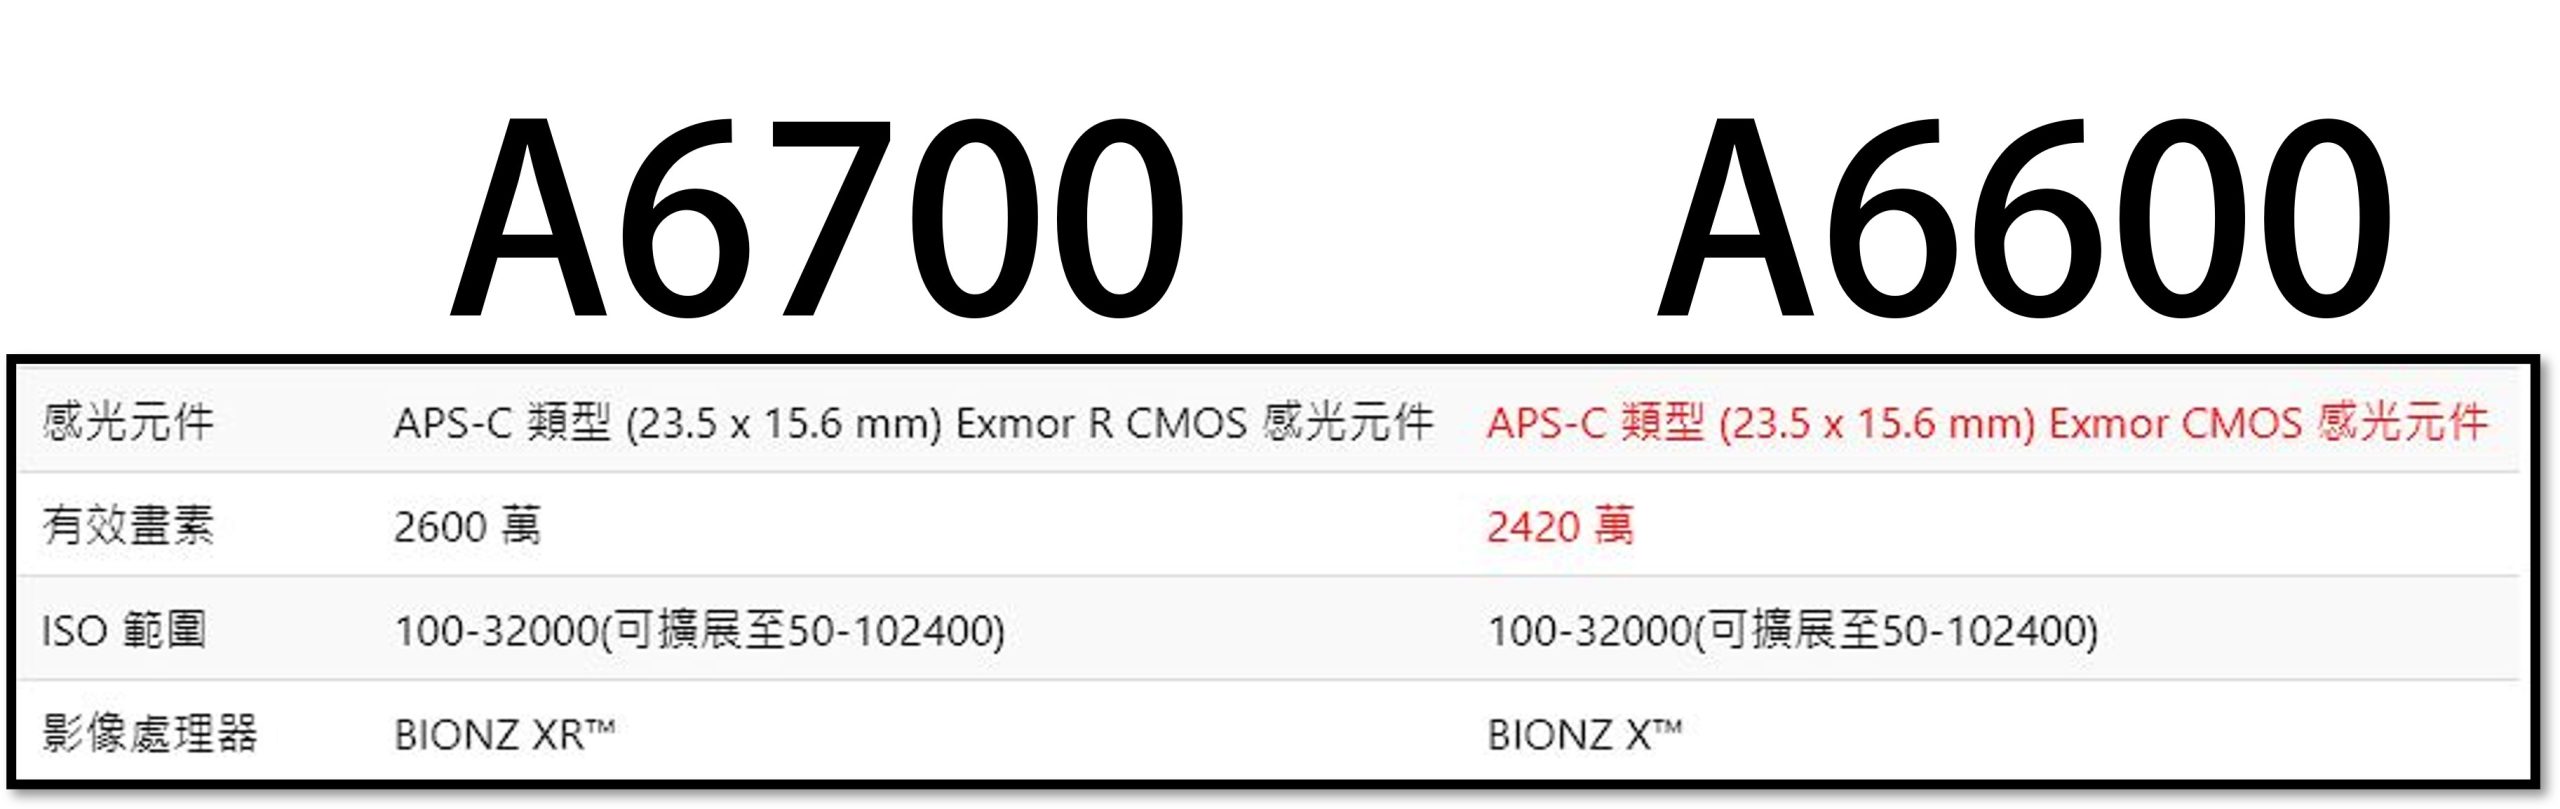 Sony A6700 規格